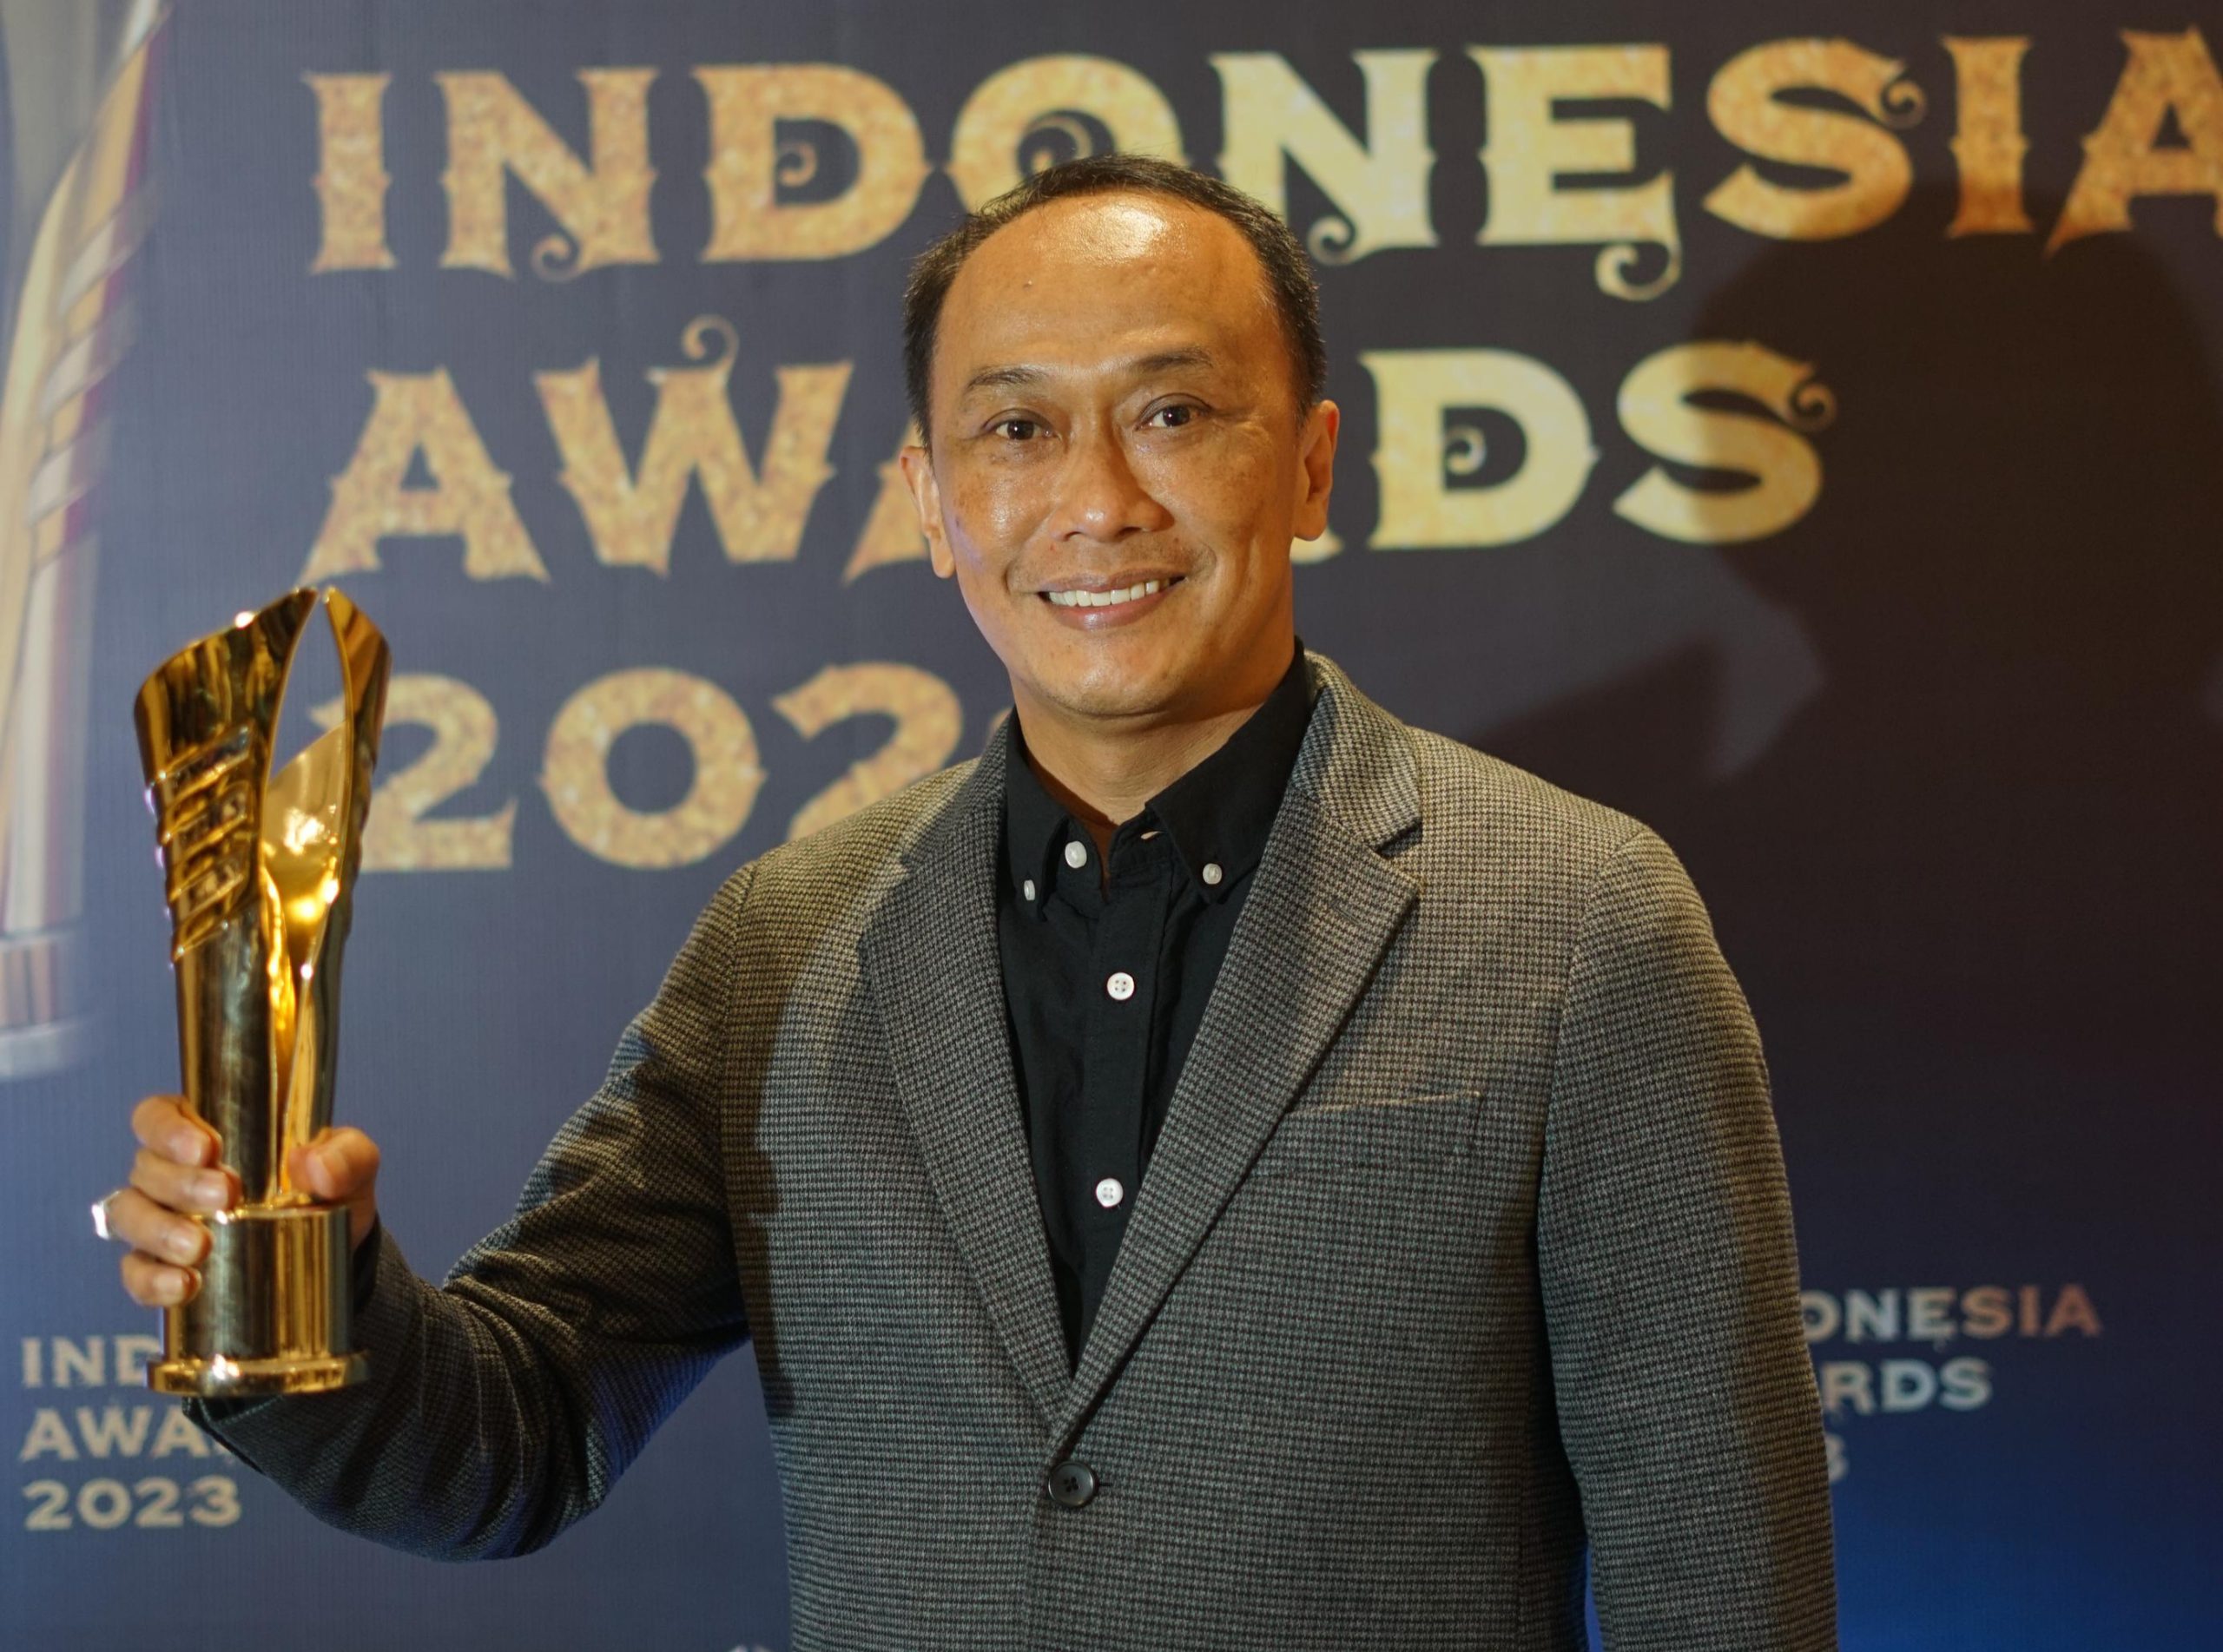 Tiga Bulan Menjabat, Pj Gubernur Sulbar Raih Penghargaan Indonesia Awards 2023